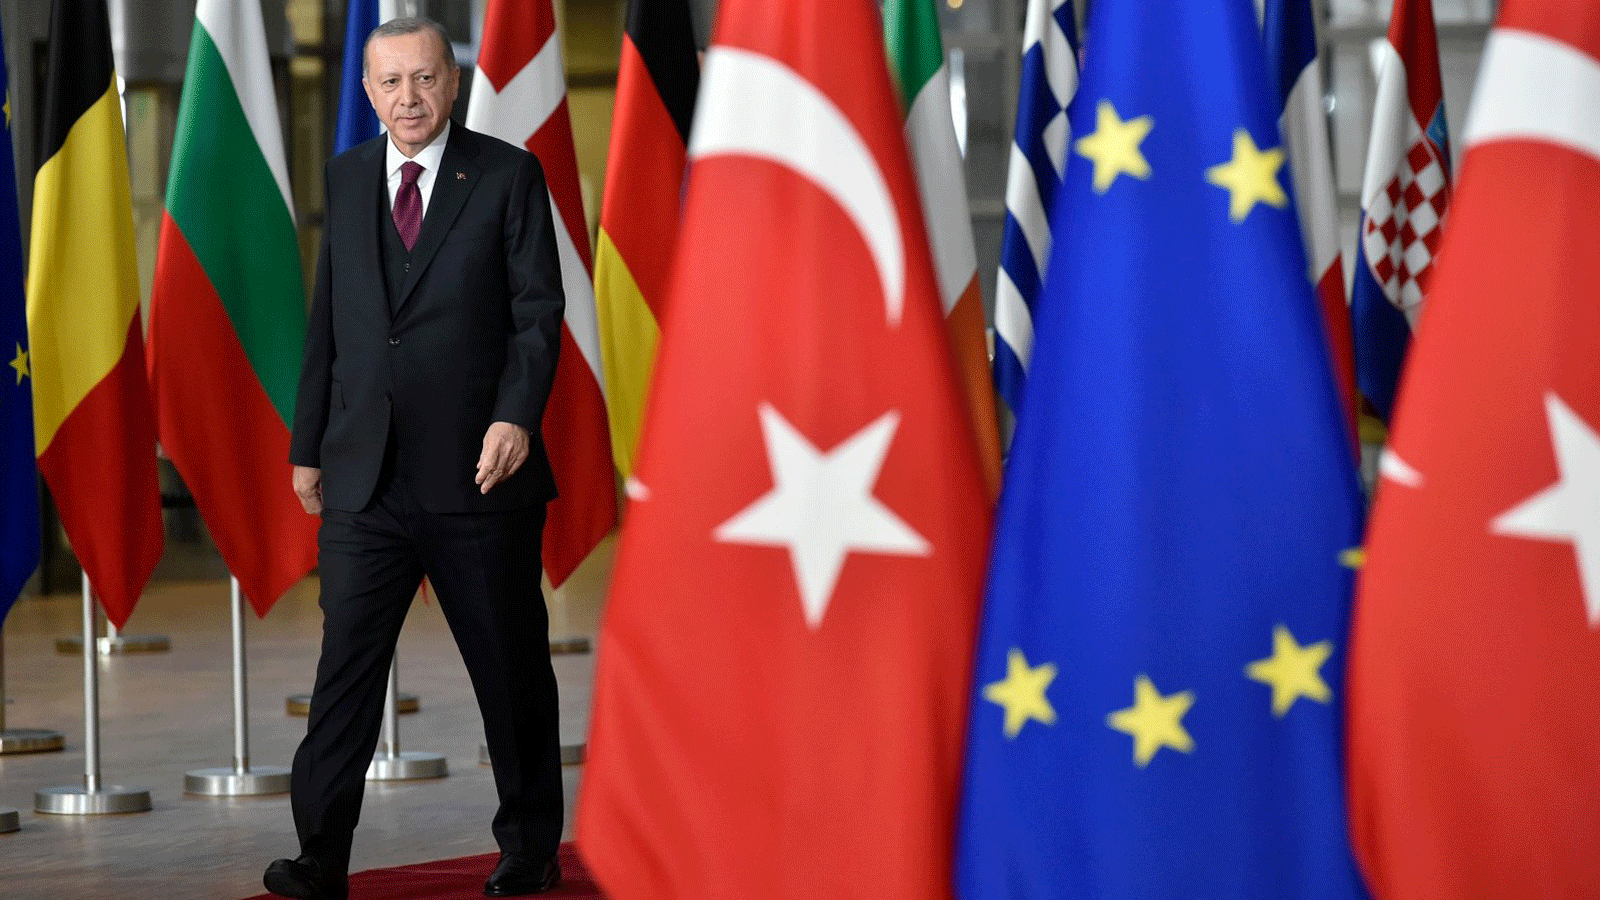 الرئيس التركي رجب طيب أردوغان يصل قبل لقاء مع رئيس المفوضية الأوروبية شارل ميشيل، في مقر الاتحاد الأوروبي في بروكسل، بلجيكا، 9 آذار/مارس 2020